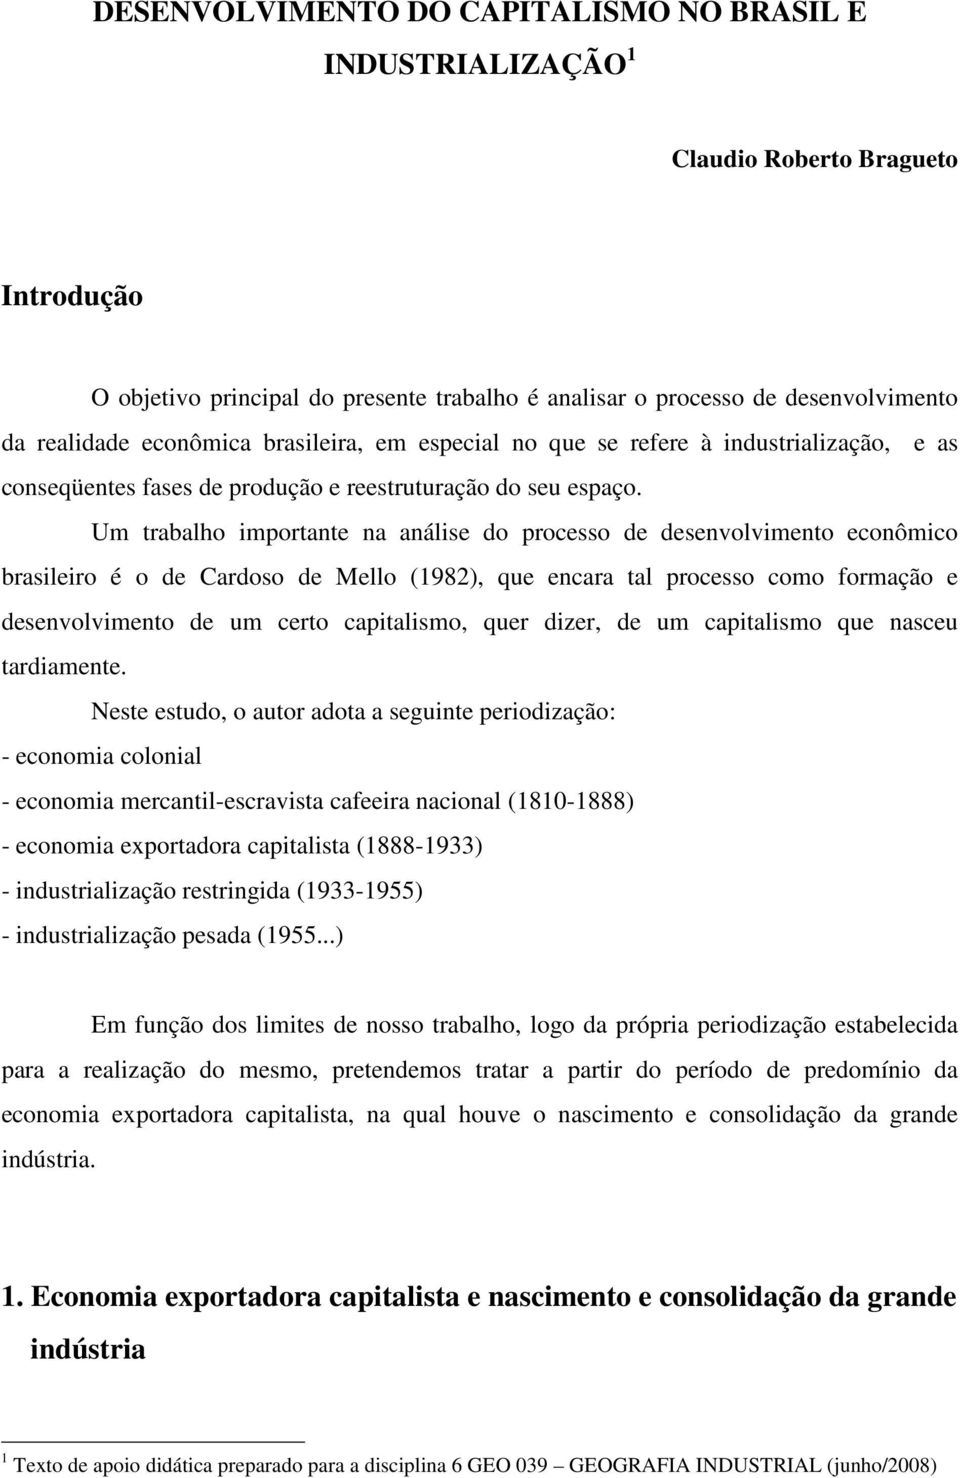 Um trabalho importante na análise do processo de desenvolvimento econômico brasileiro é o de Cardoso de Mello (1982), que encara tal processo como formação e desenvolvimento de um certo capitalismo,